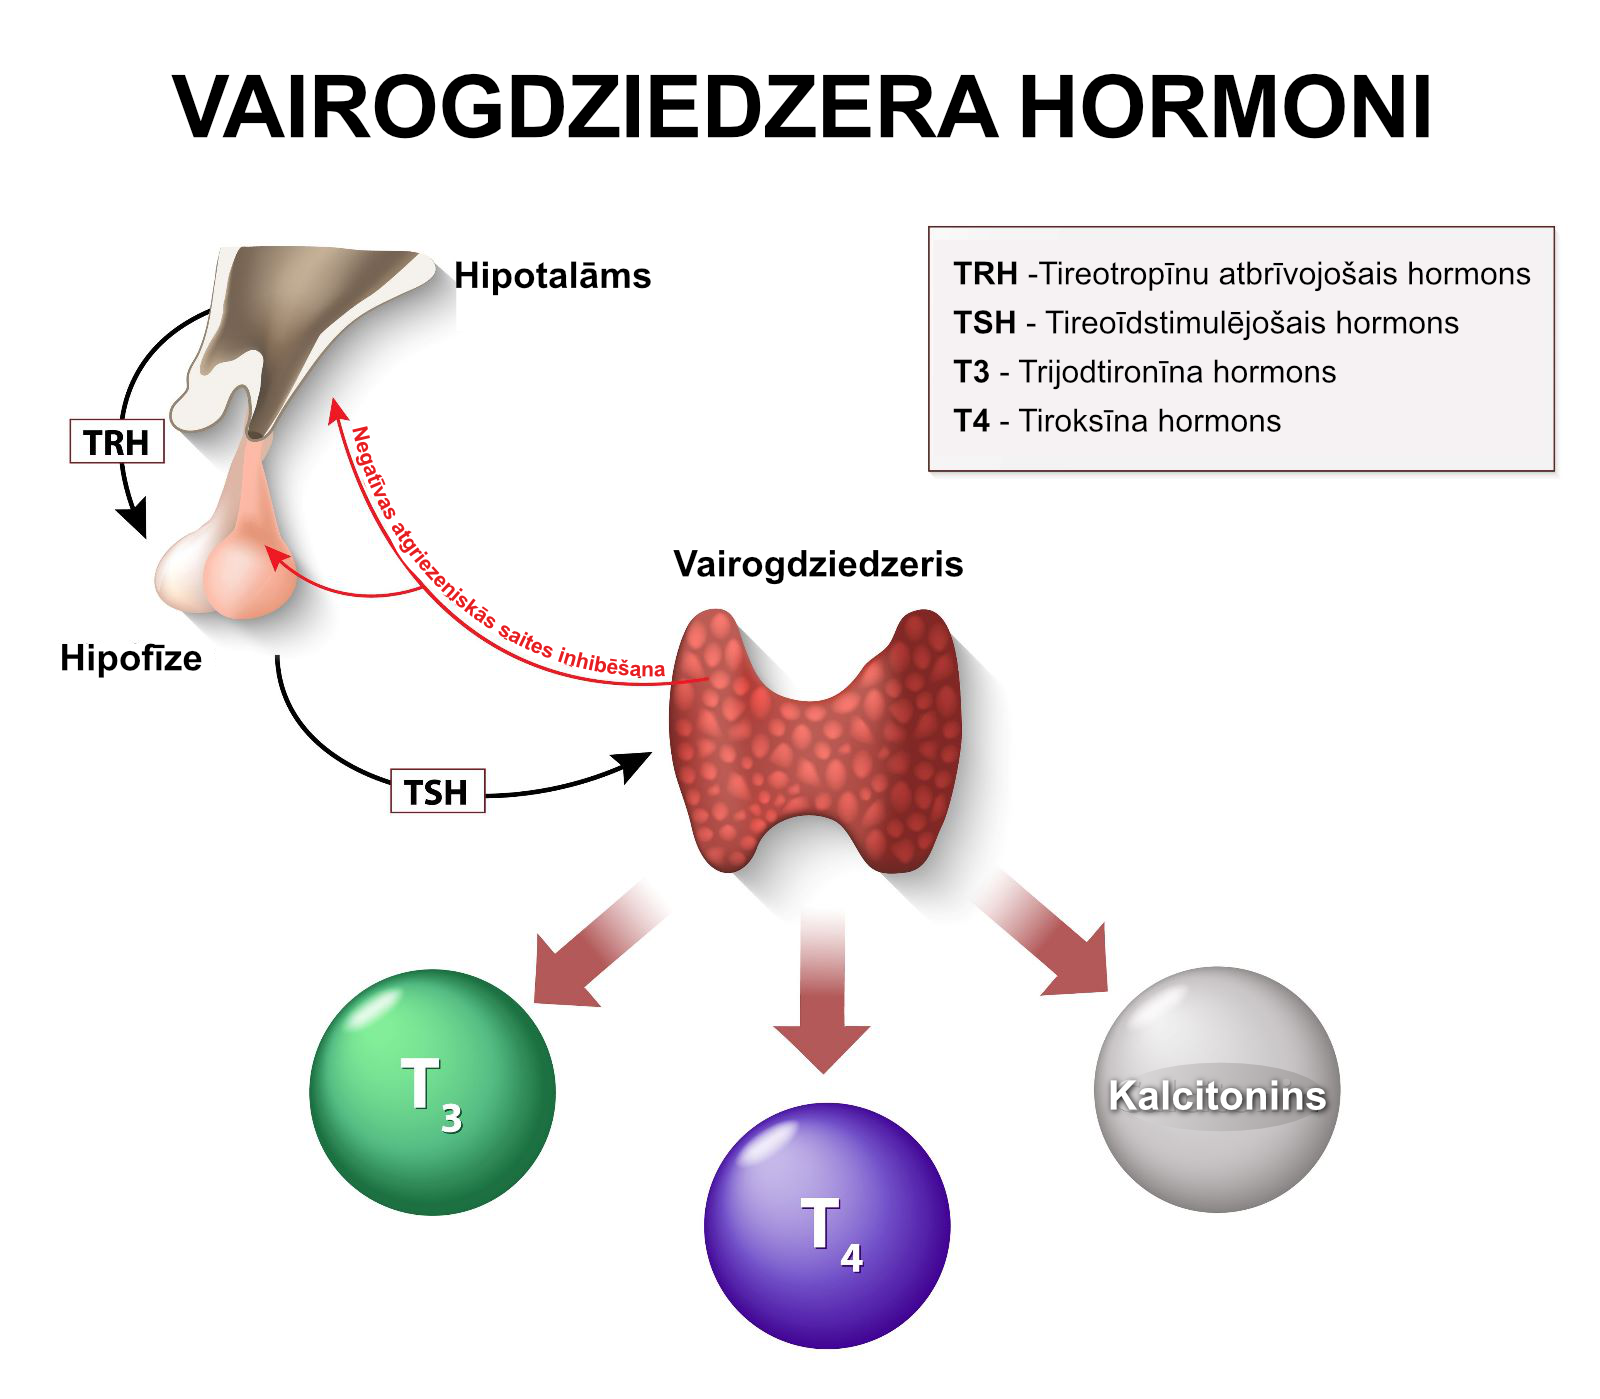 Attēlā izskaidrots vairogdziedzera kontroles mehānisms un dažādas hormonu darbības saistībā ar vairogdziedzera hormonu veidošanos. Hipotalāms ražo TRH, un šis hormons kontrolē to, kā hipofīze regulē TSH izdalīšanos, kas savukārt ietekmē vairogdziedzera hormonu T3 un T4, trijodtironīna, levotiroksīna un kalcitonīna veidošanos.